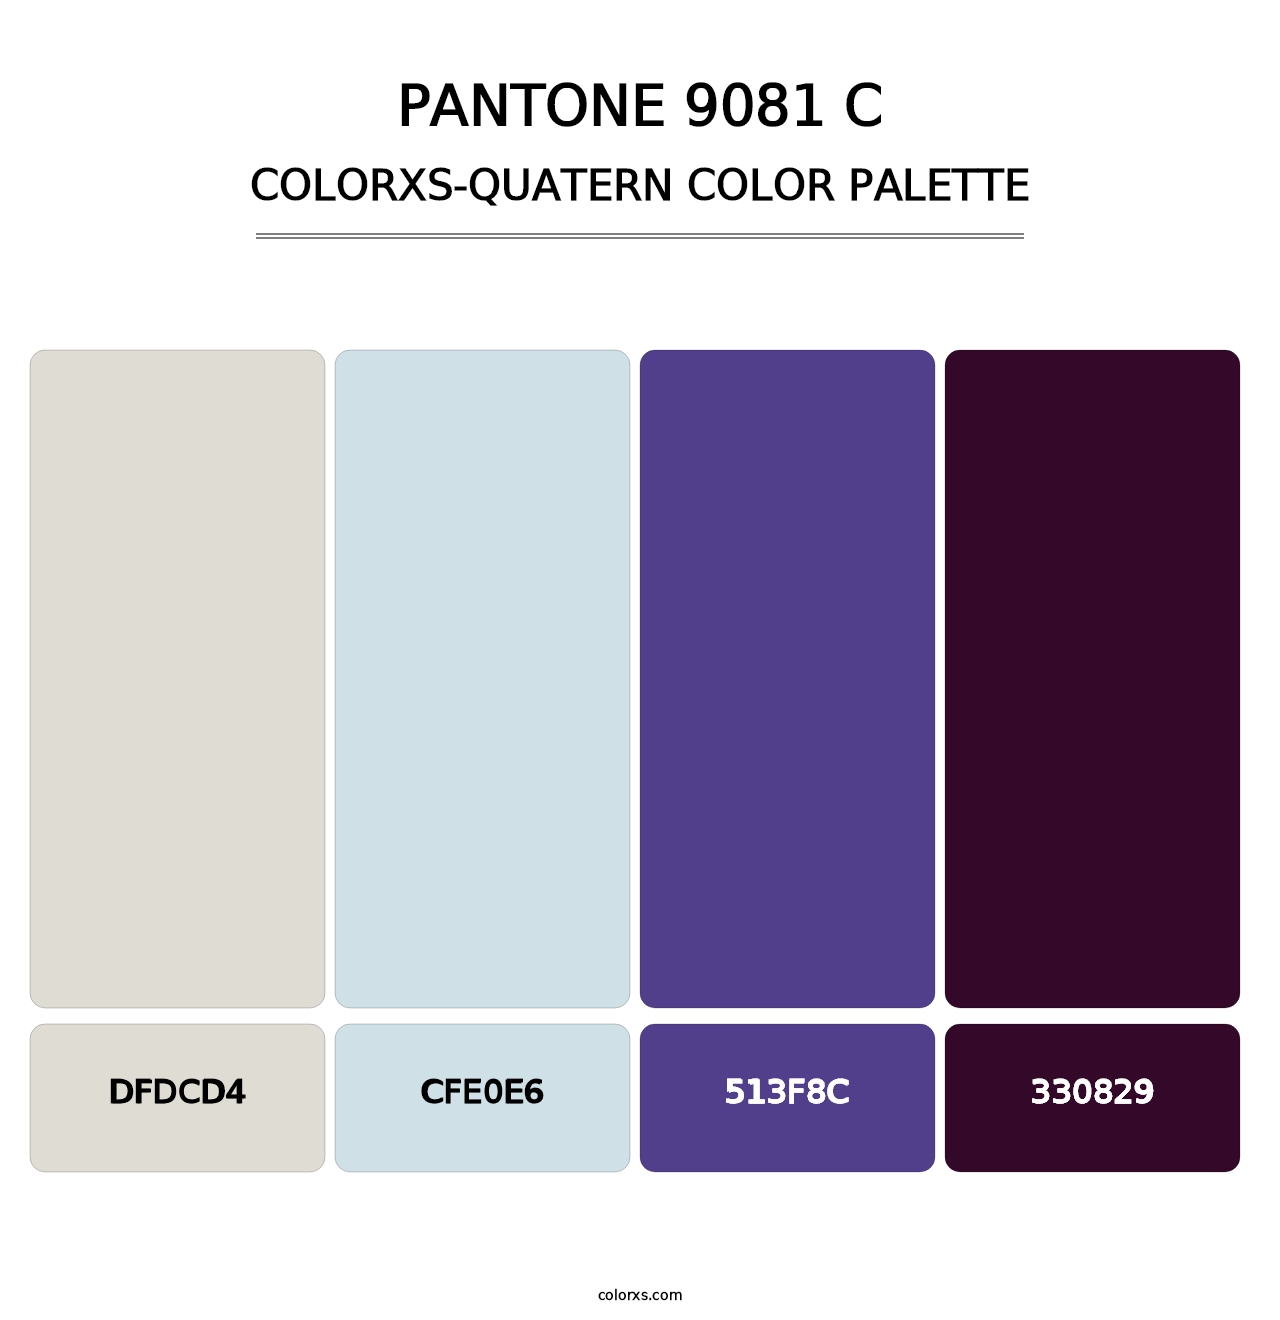 PANTONE 9081 C - Colorxs Quatern Palette